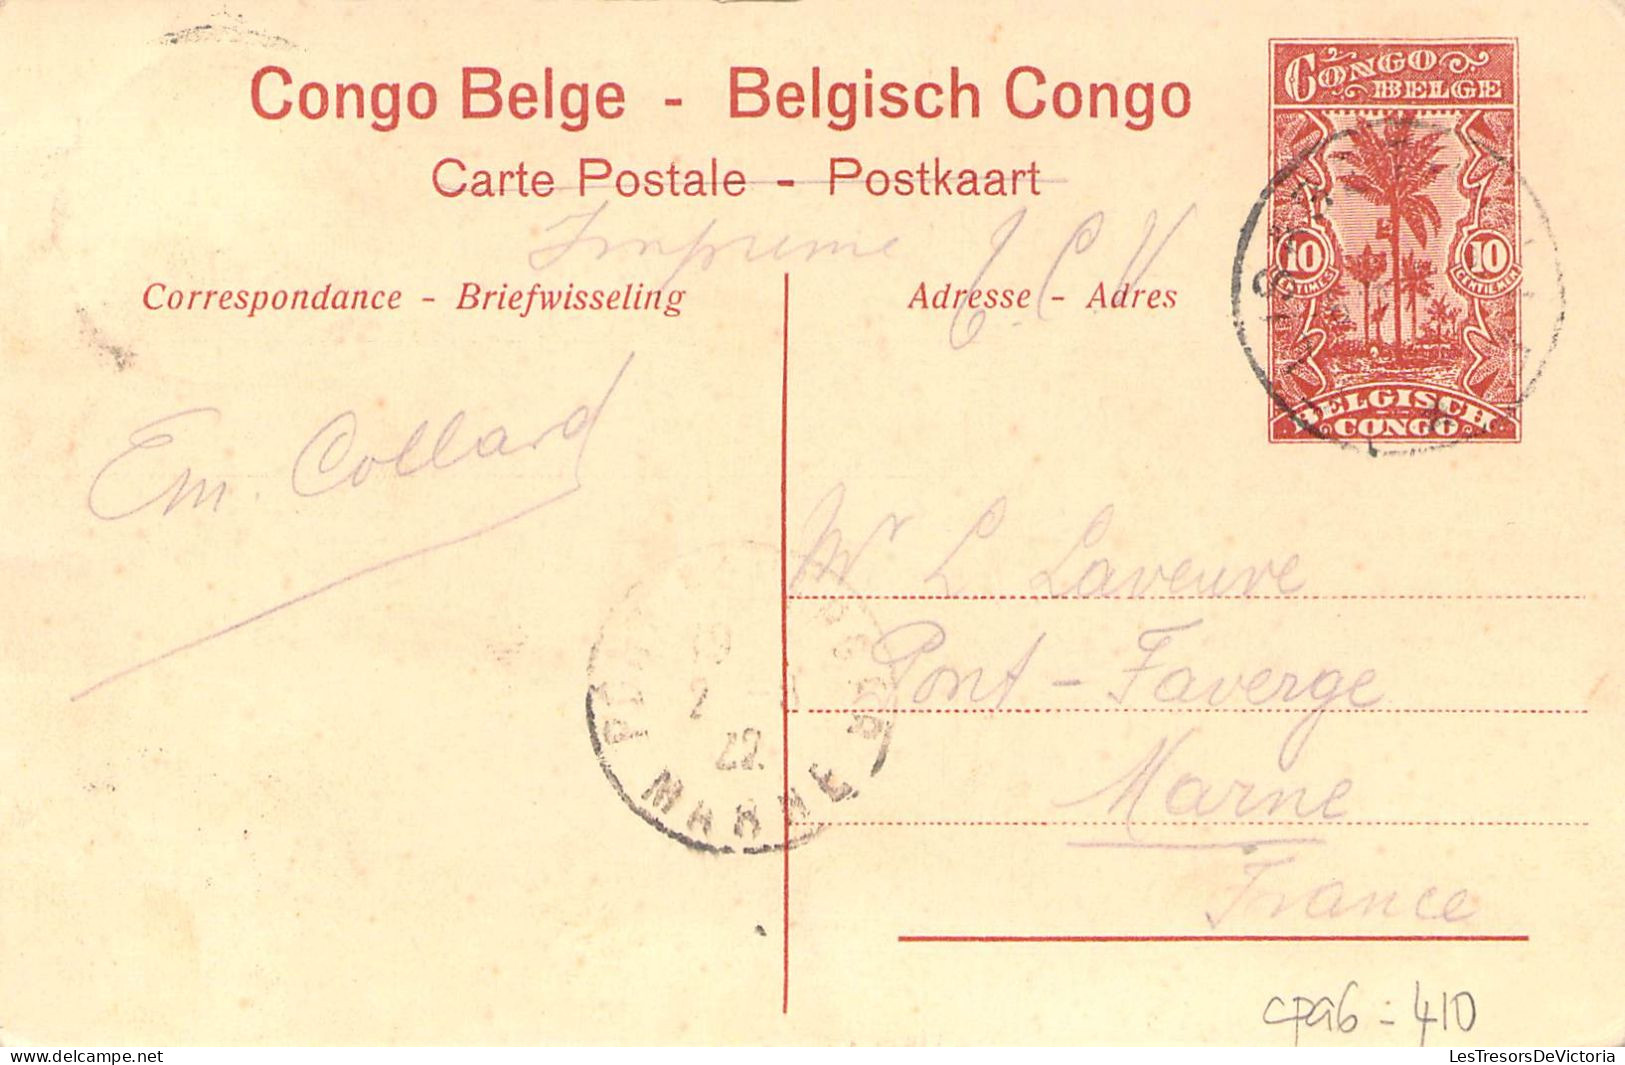 Congo Belge - Katanga - Sur La Ligne De Sakania à Elisabethville - Train - Animé- Carte Postale Ancienne - Belgisch-Kongo